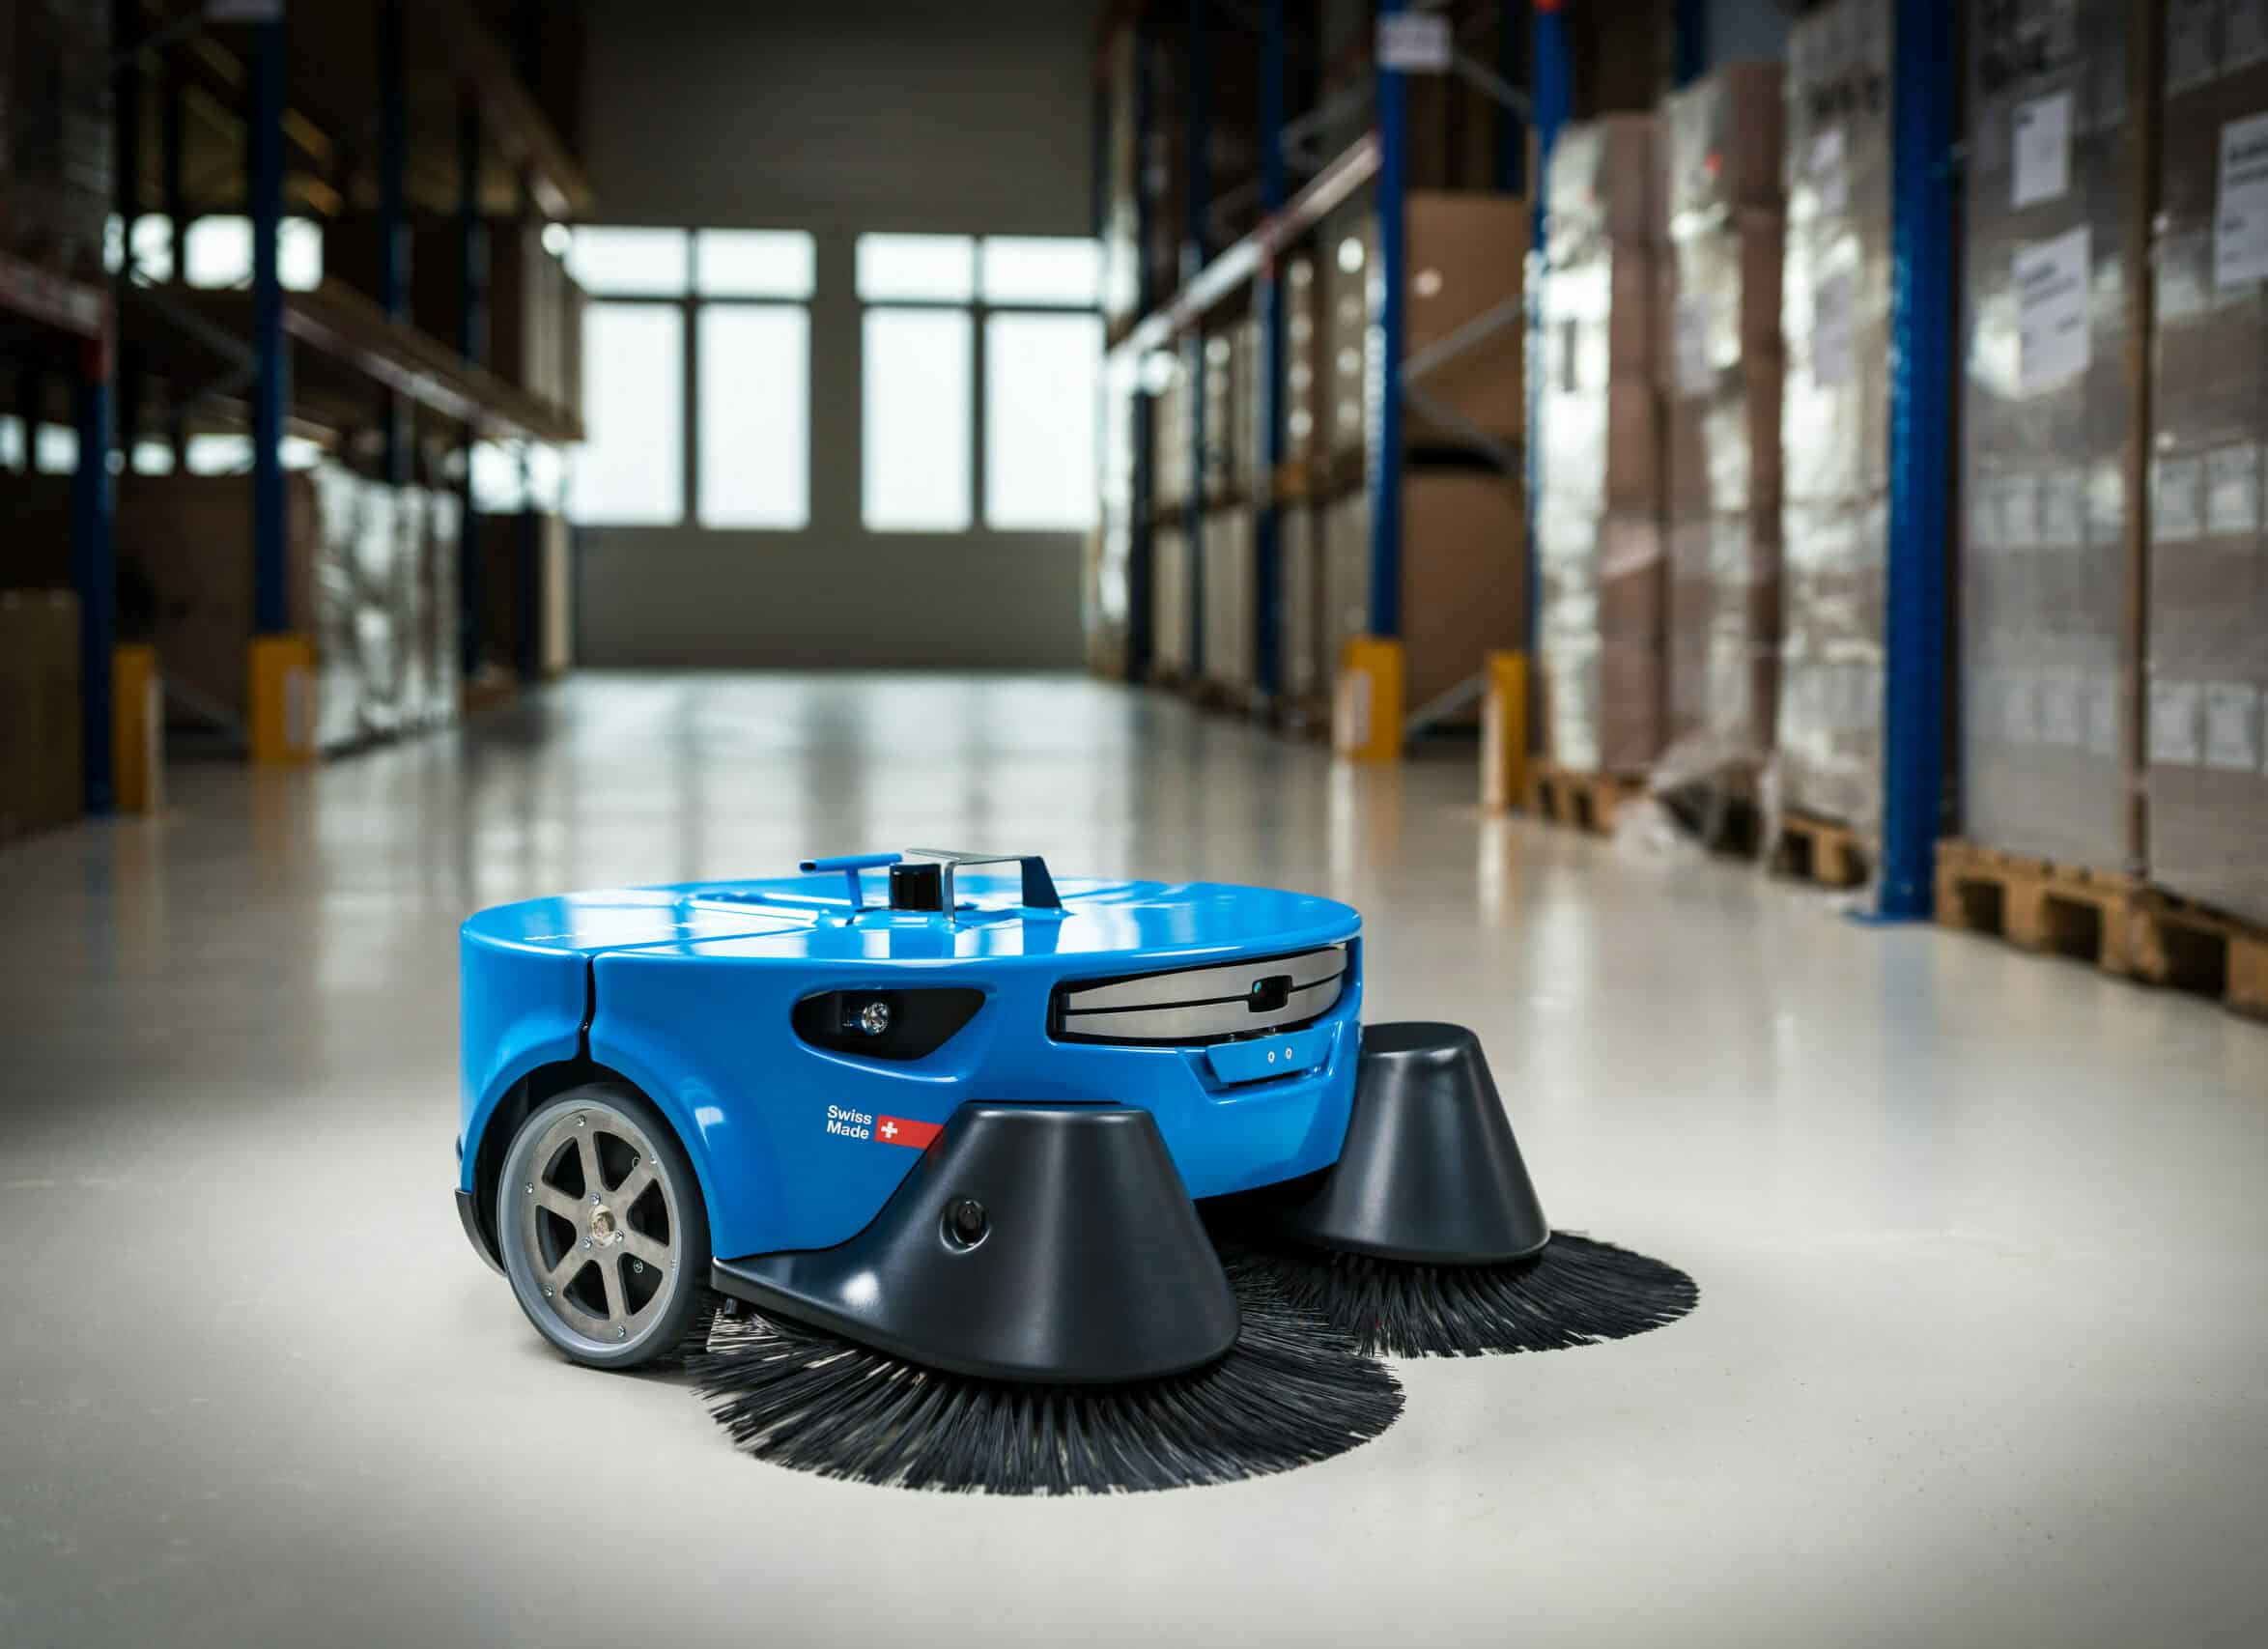 Robot Sweeper K900 - Industrial Cleaner Robot